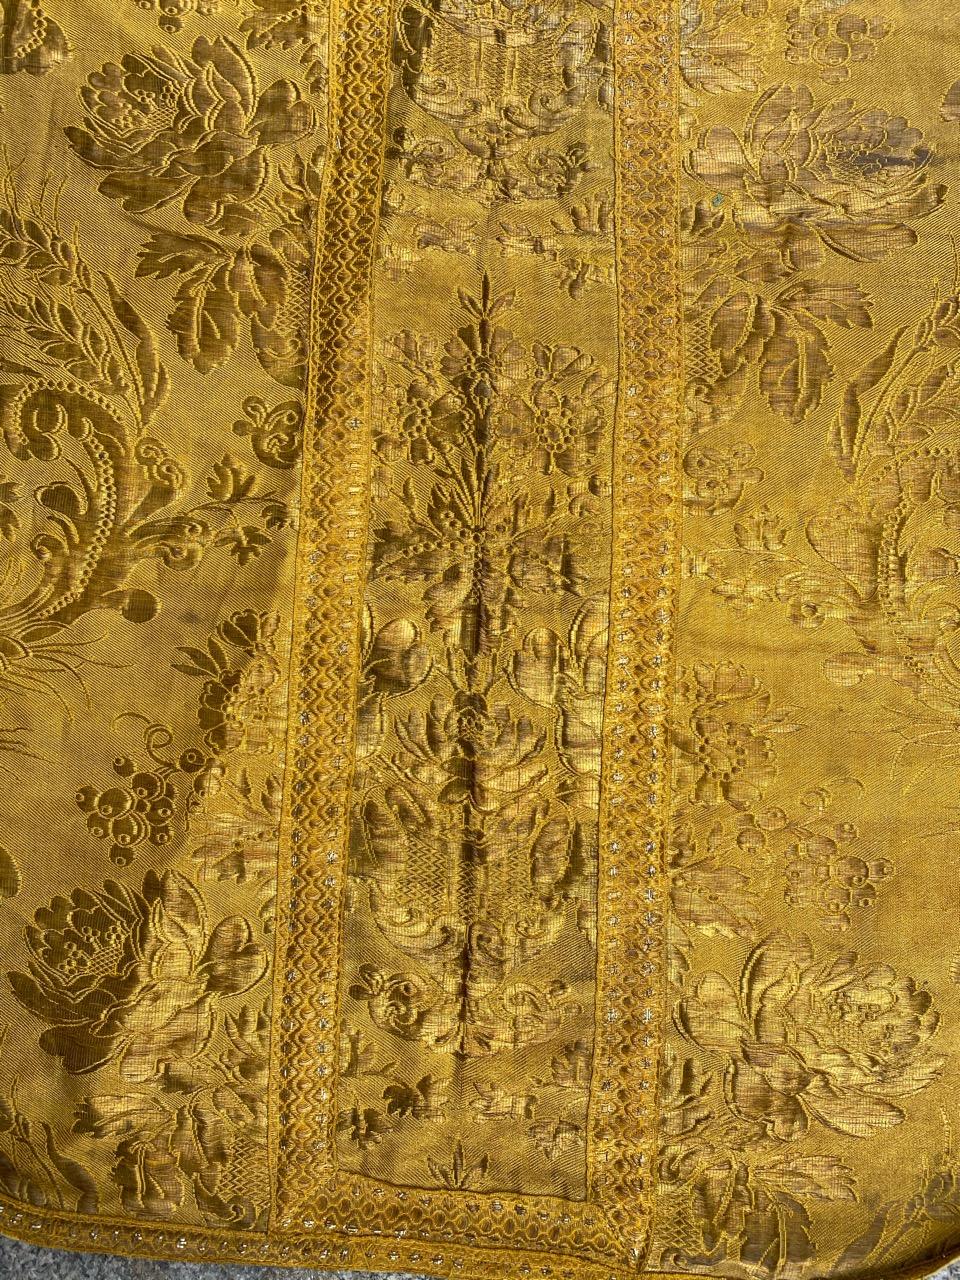 Wunderschönes christliches Messgewand aus dem frühen 20. Jahrhundert für einen Priester, komplett mit goldenen Metalldrähten gewebt, mit schönem Blumenmuster.

✨✨✨
